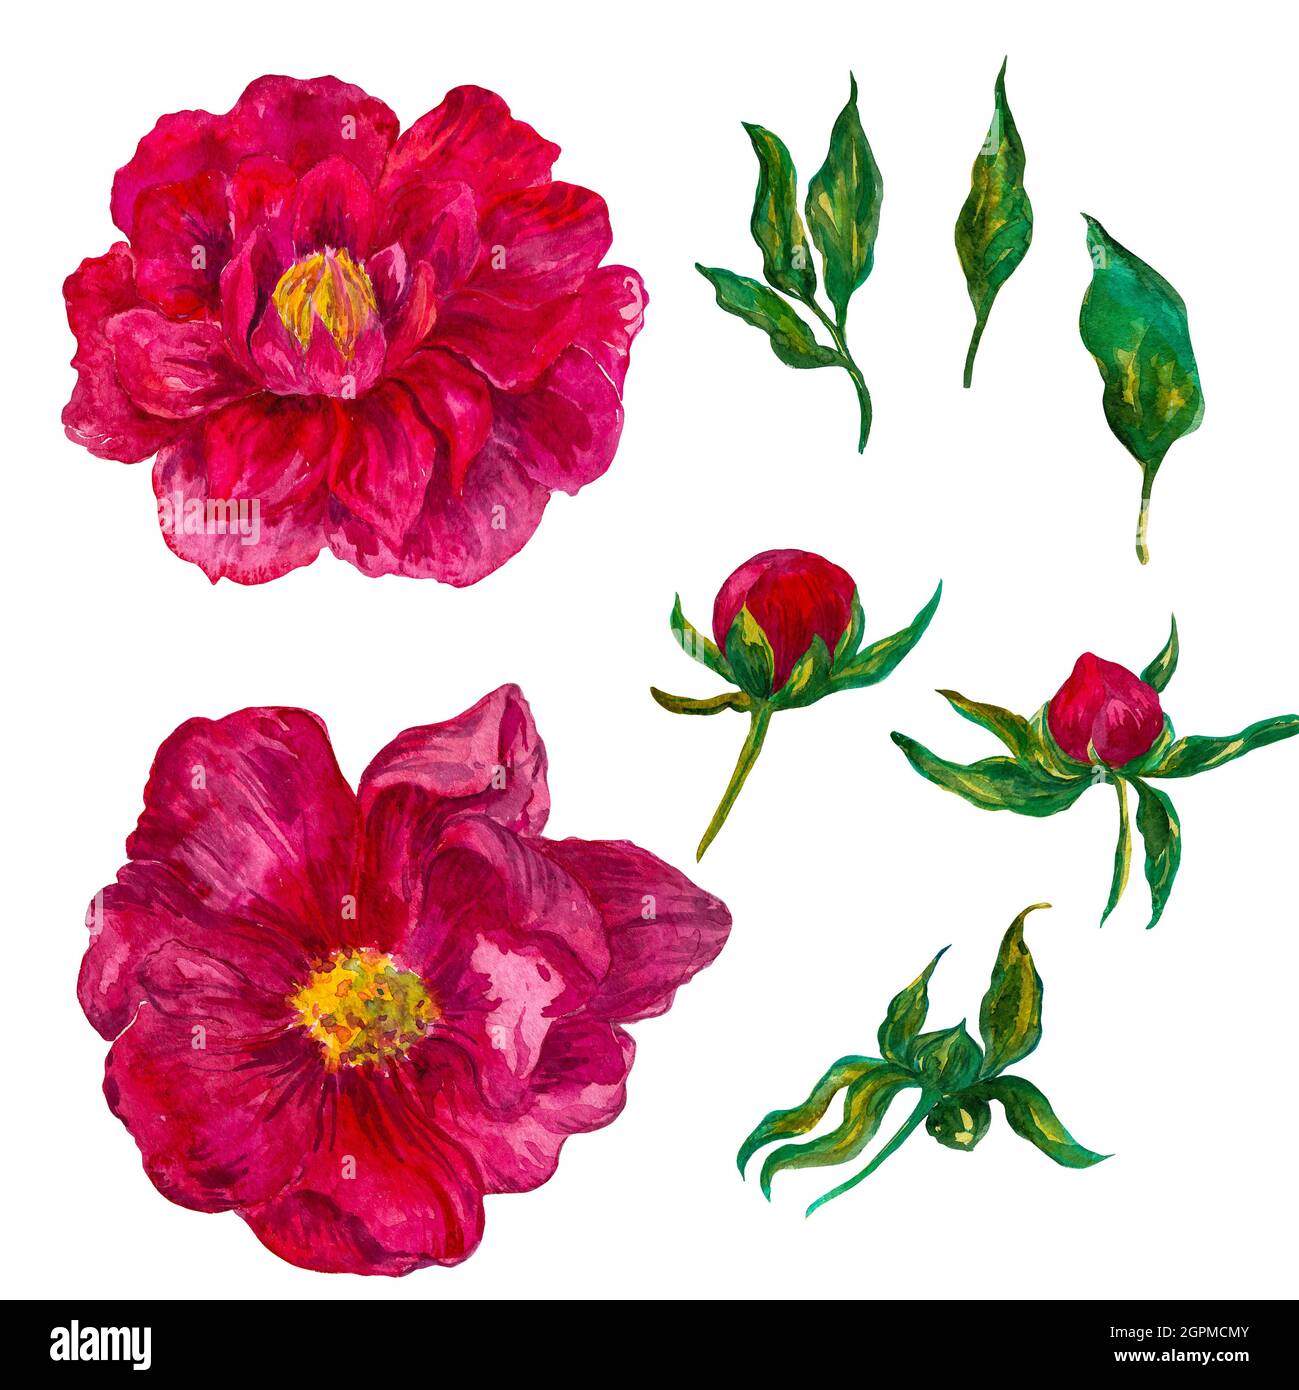 acquerello composizione floreale, colori luminosi della peonia. Illustrazione botanica Foto Stock